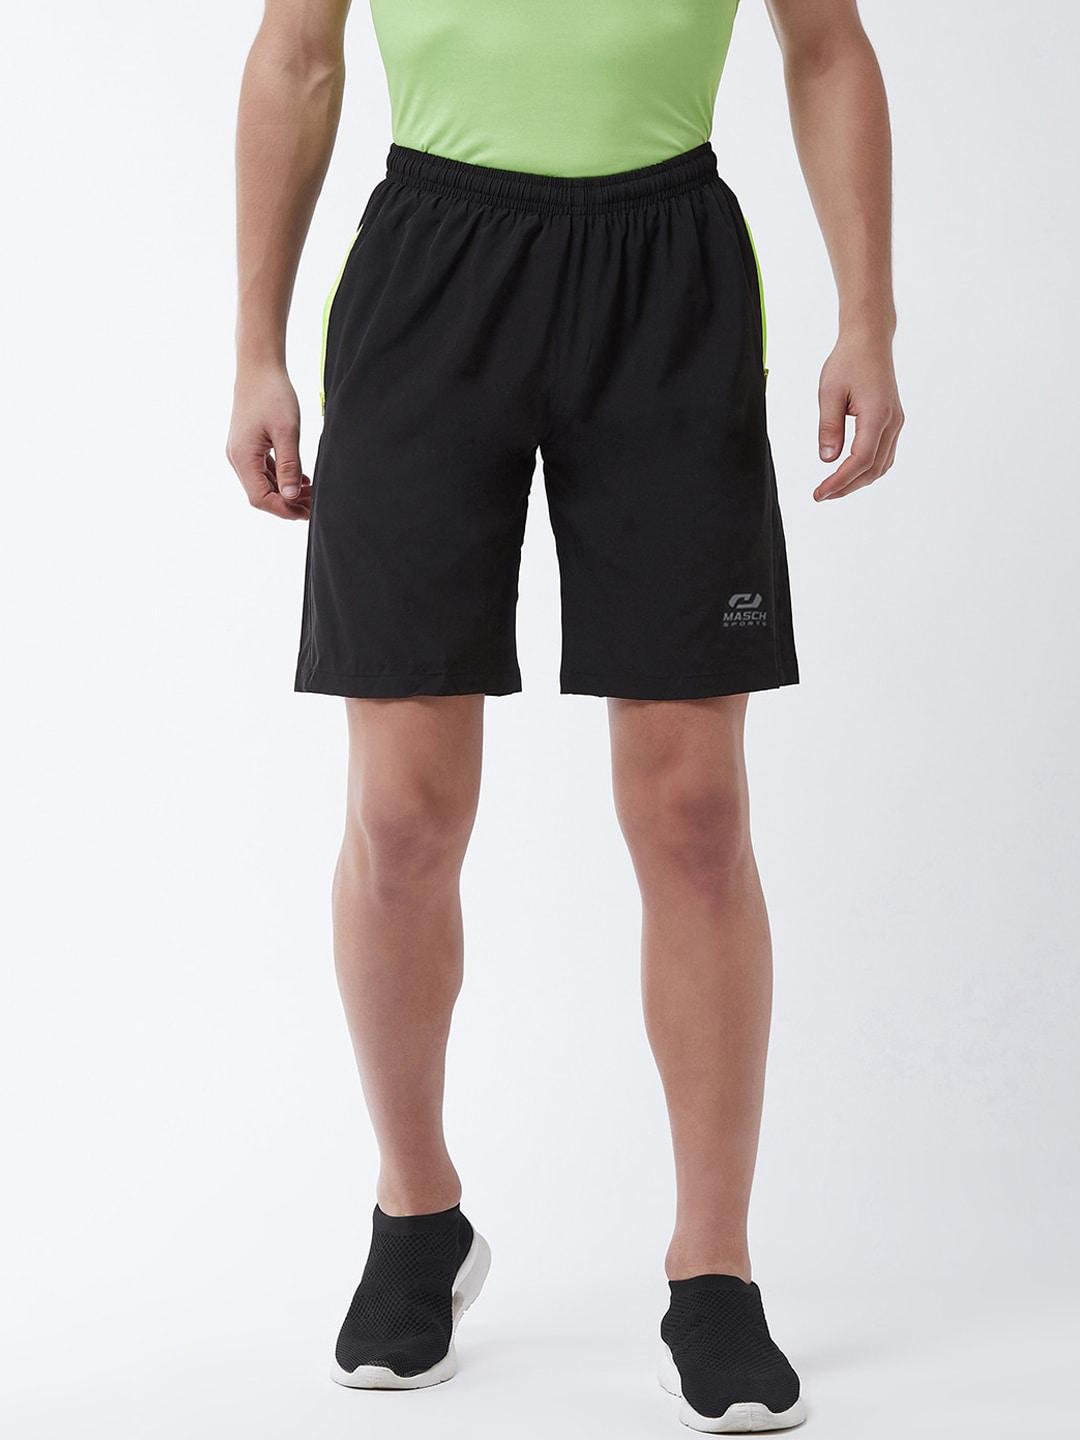 masch sports men black dri-fit sports shorts